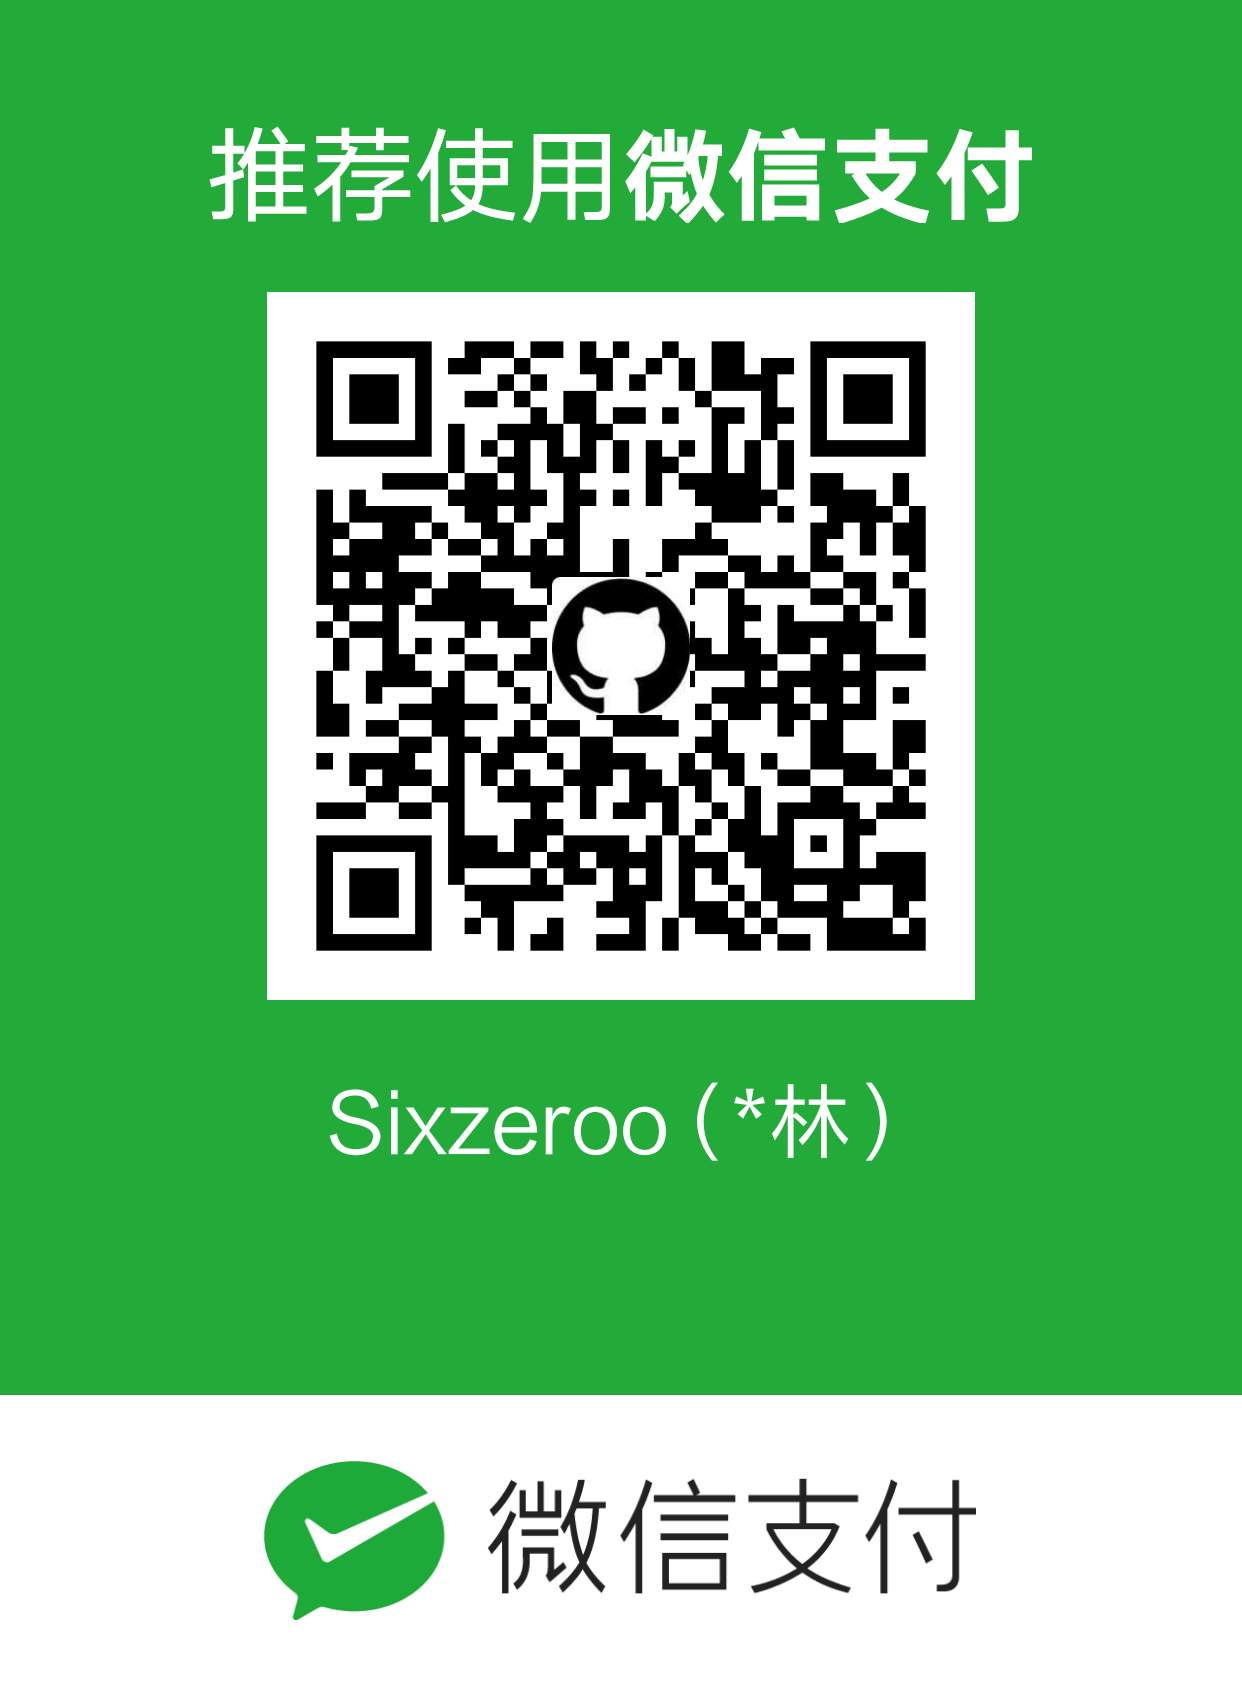 Sixzeroo WeChat Pay